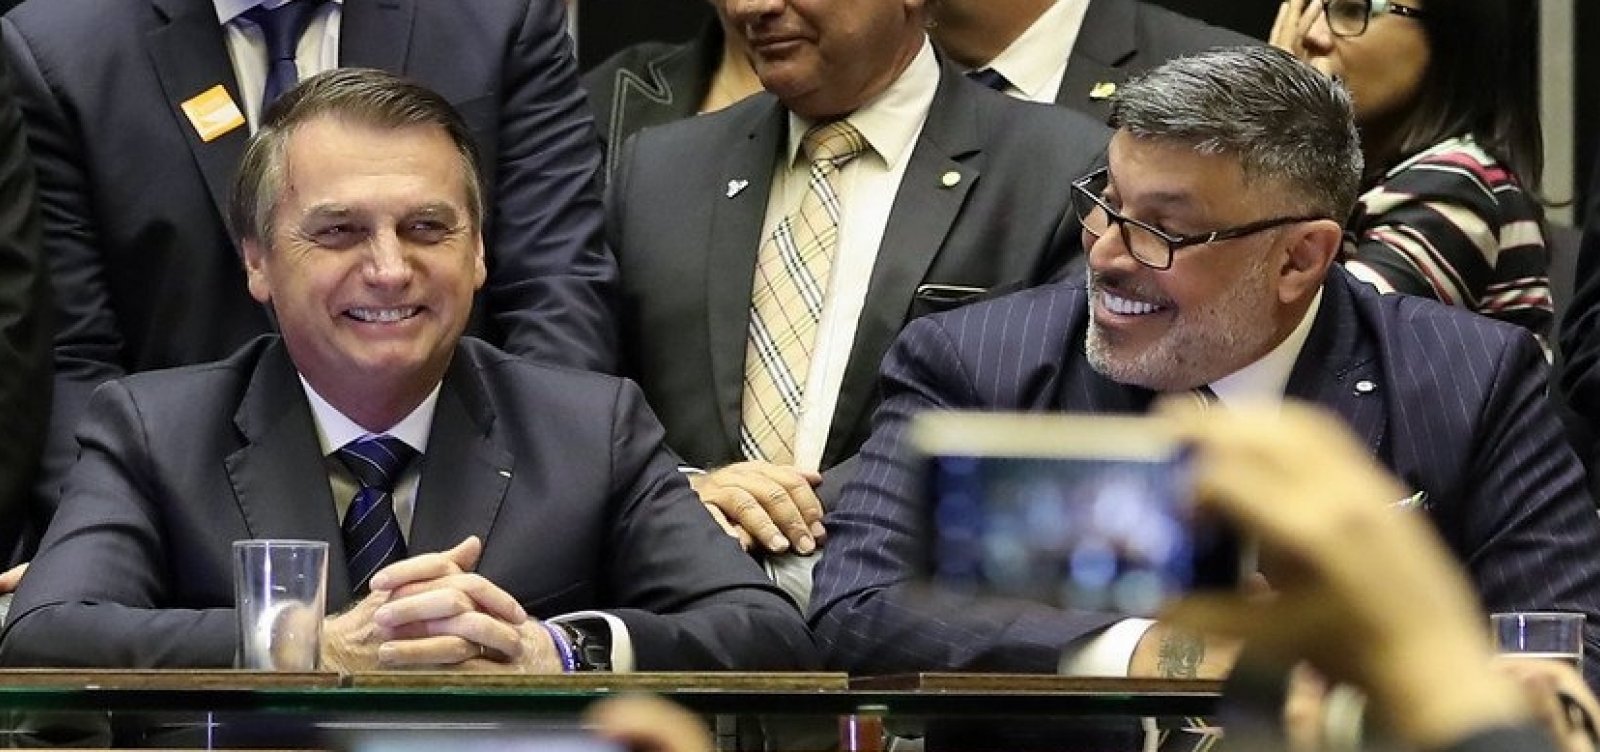 Frota contesta Bolsonaro sobre escolha de Mourão como vice: 'Conta das fotos, Jair Bolsonaro'